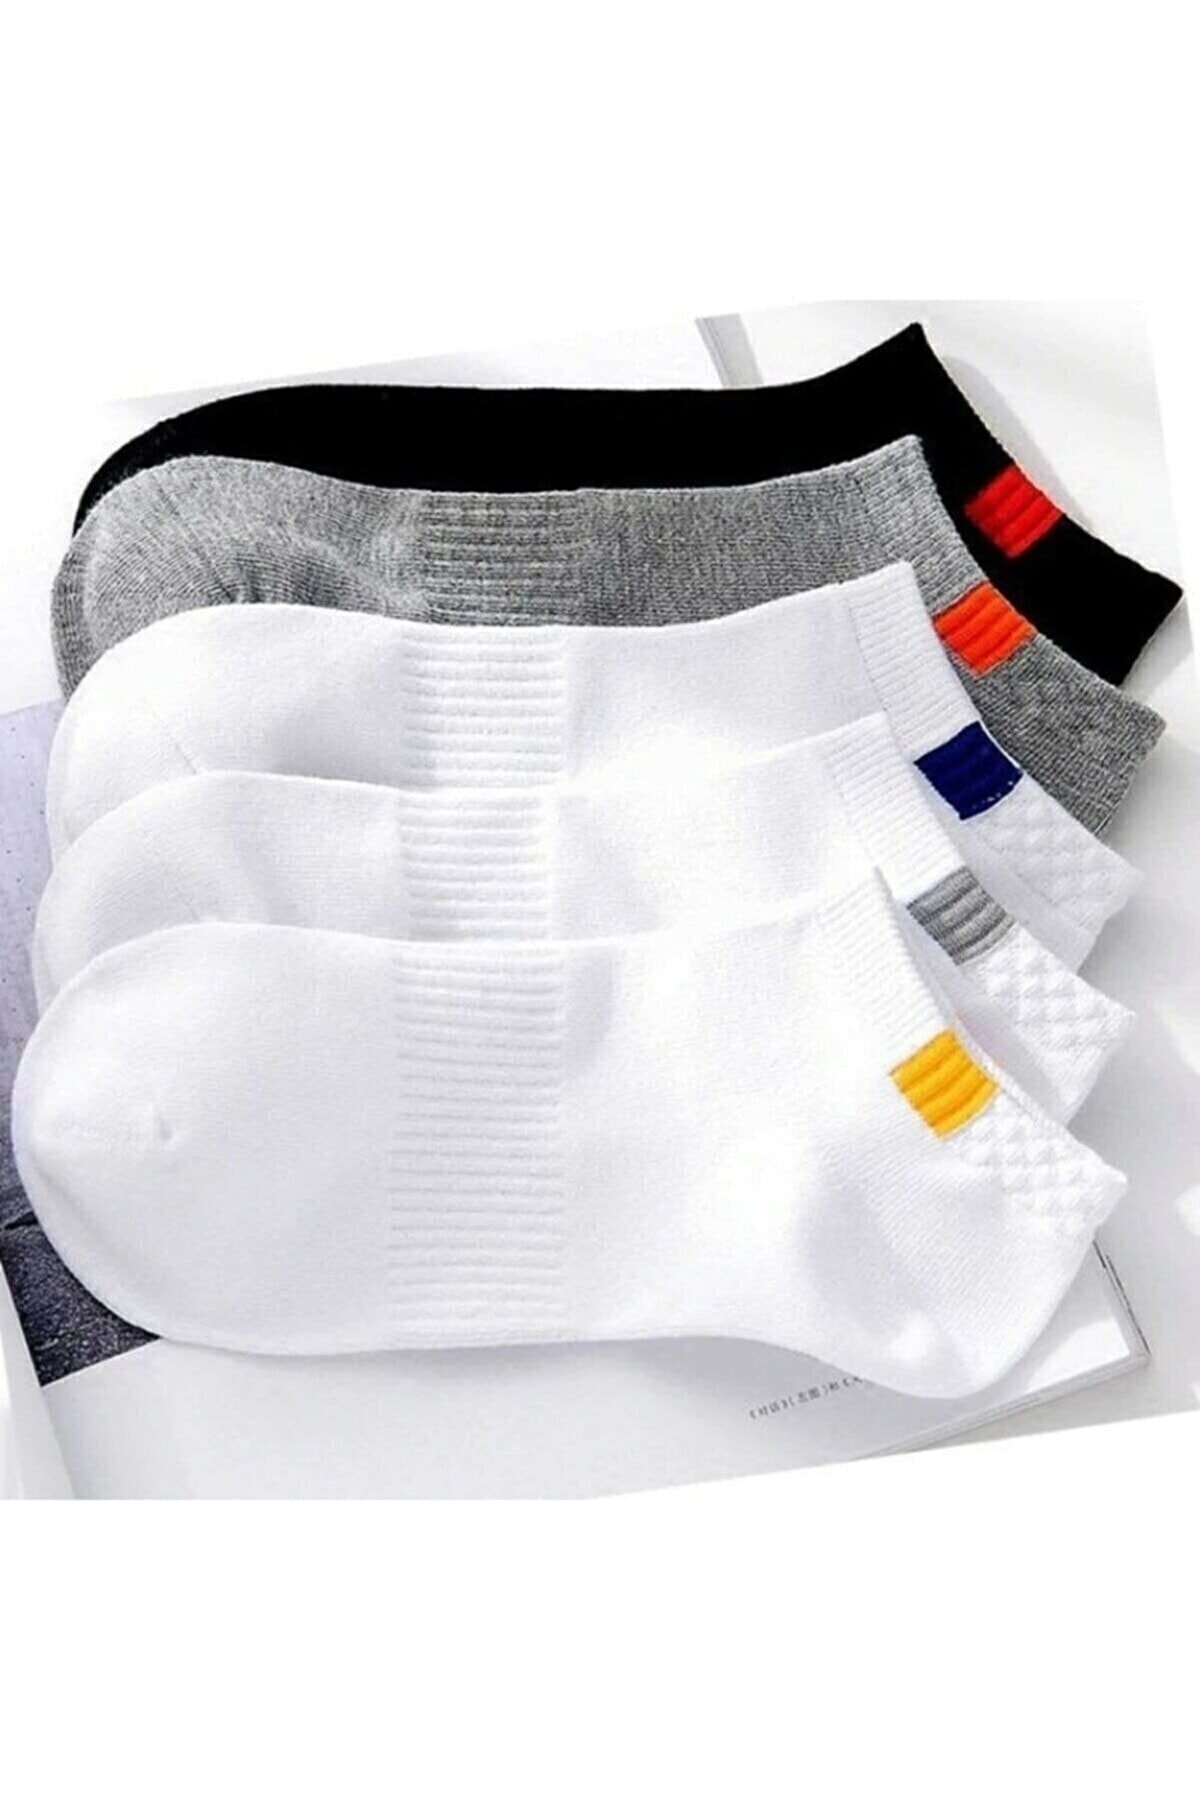 shoppingmode Unisex Yazlık Extra Soft Spor Patik Çorap Seti 5 Çift